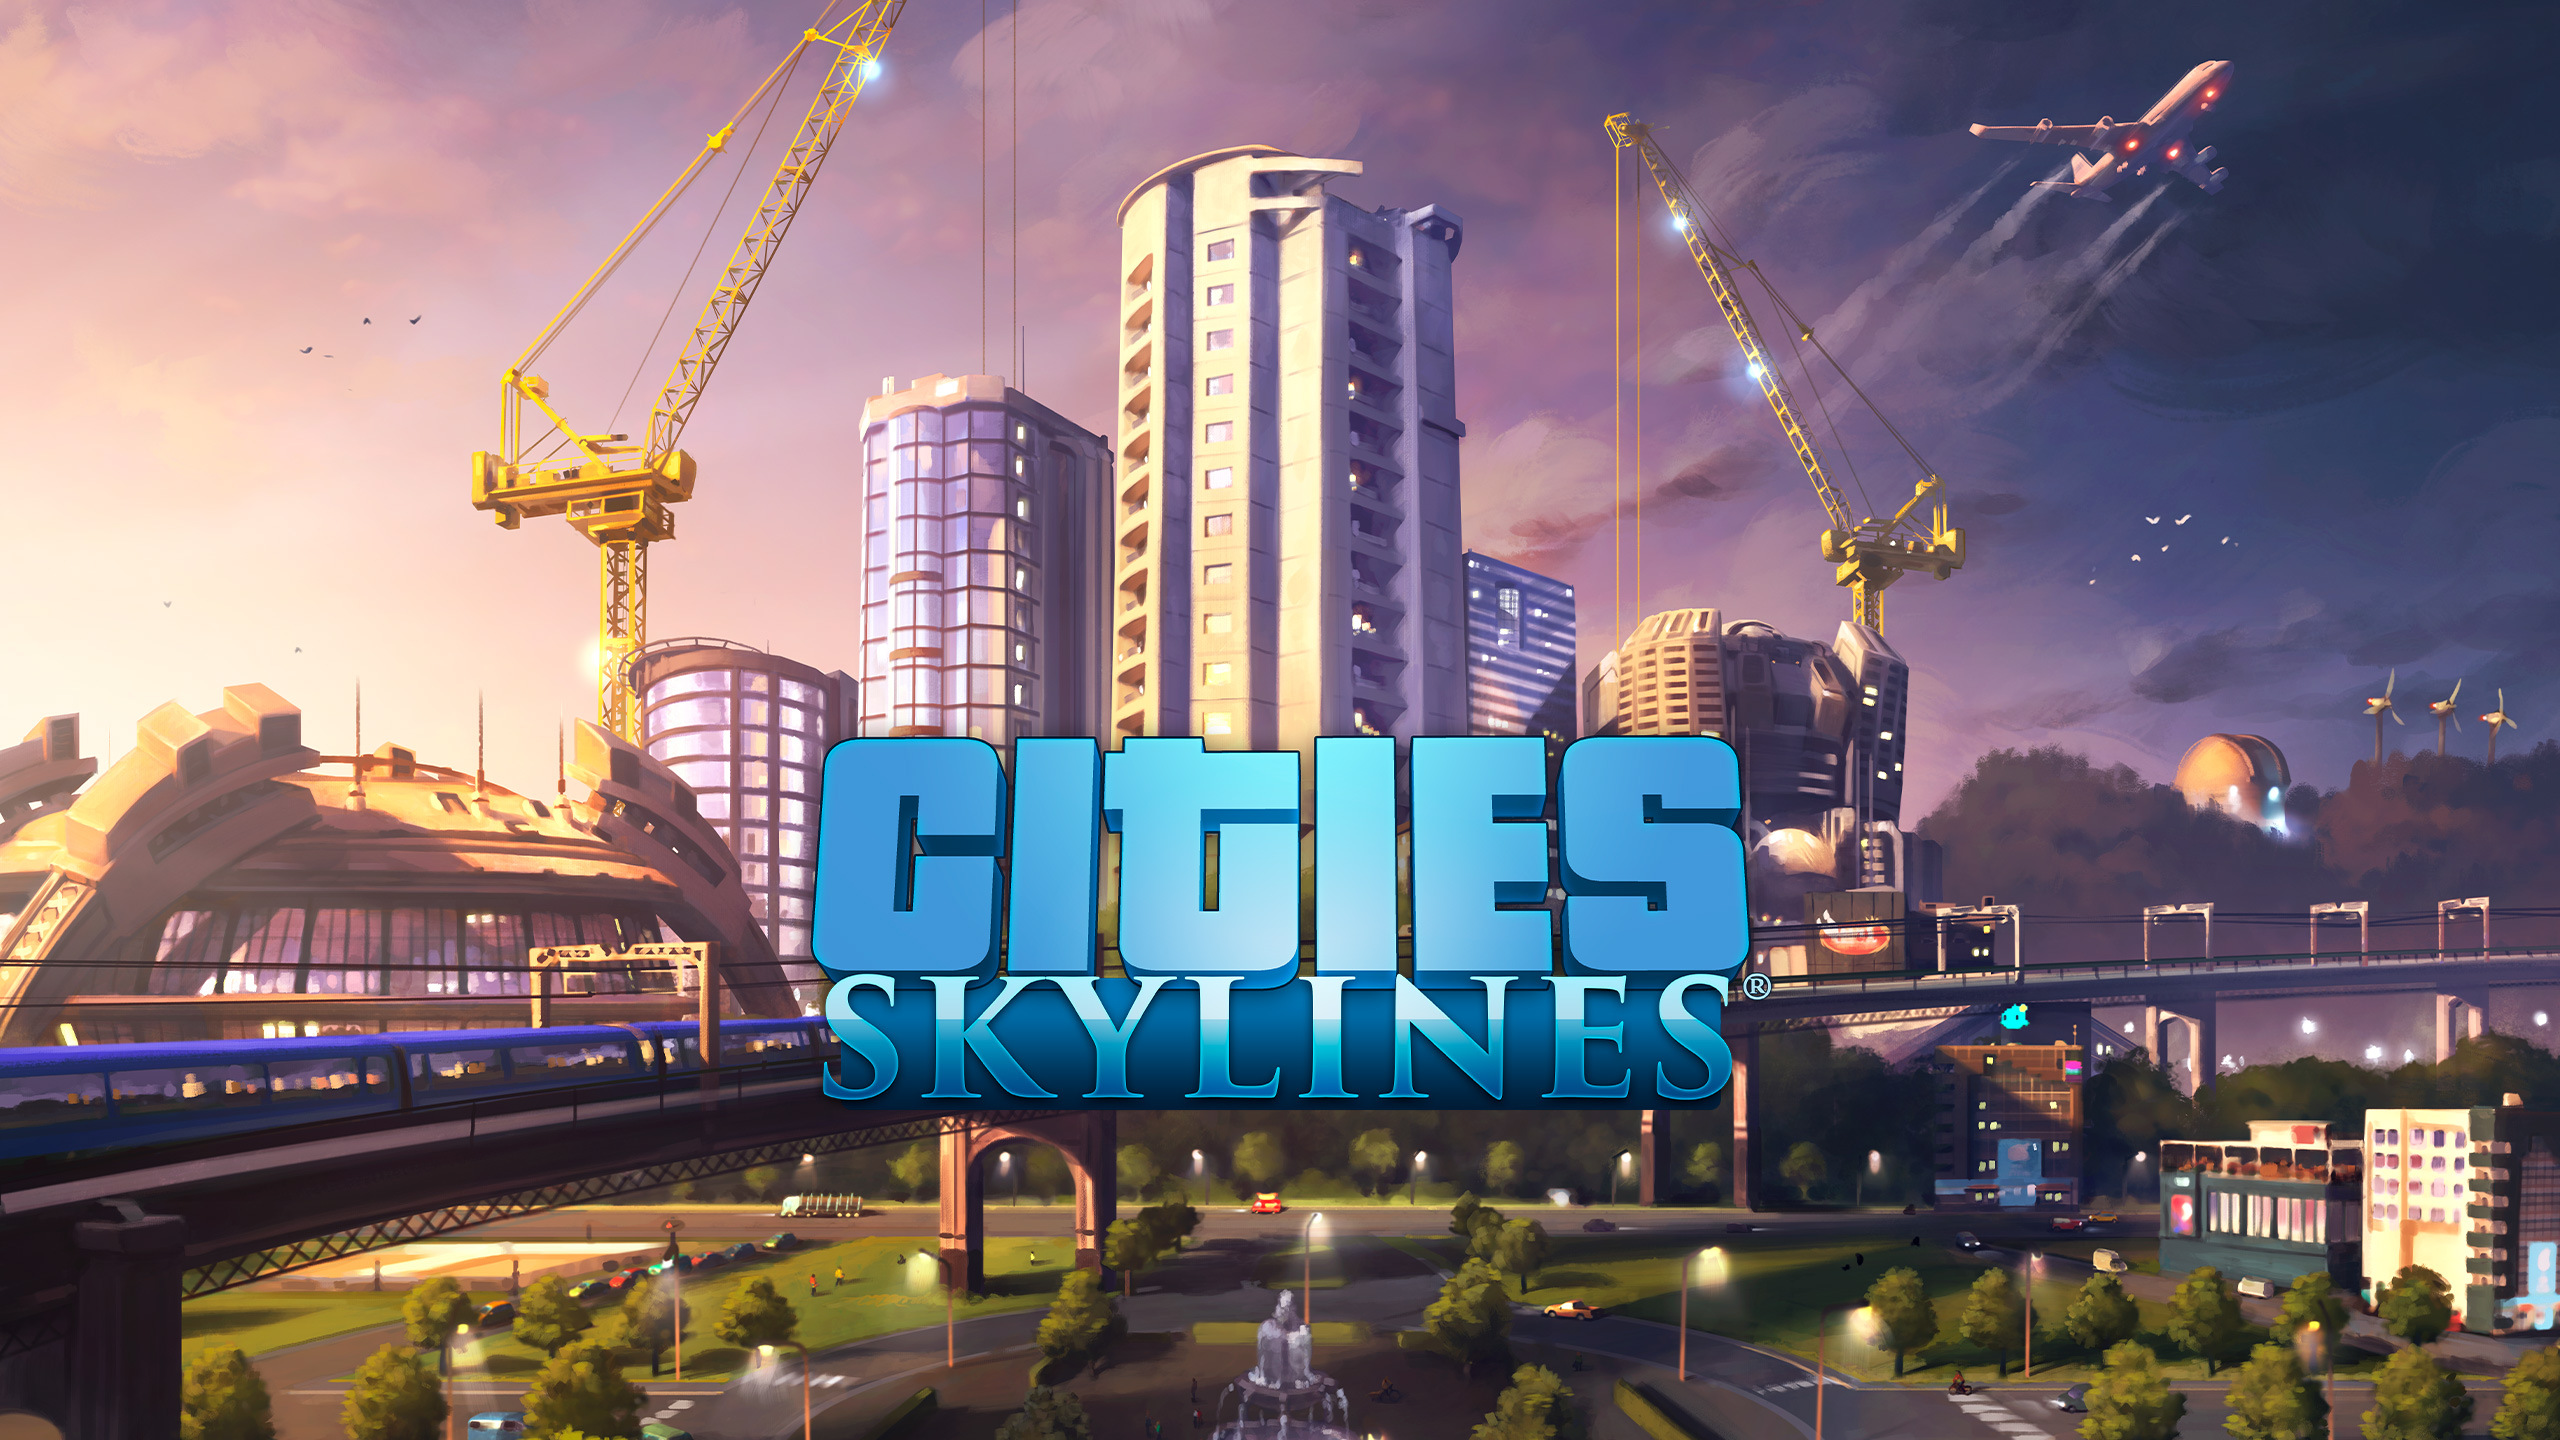 StädteSkylines